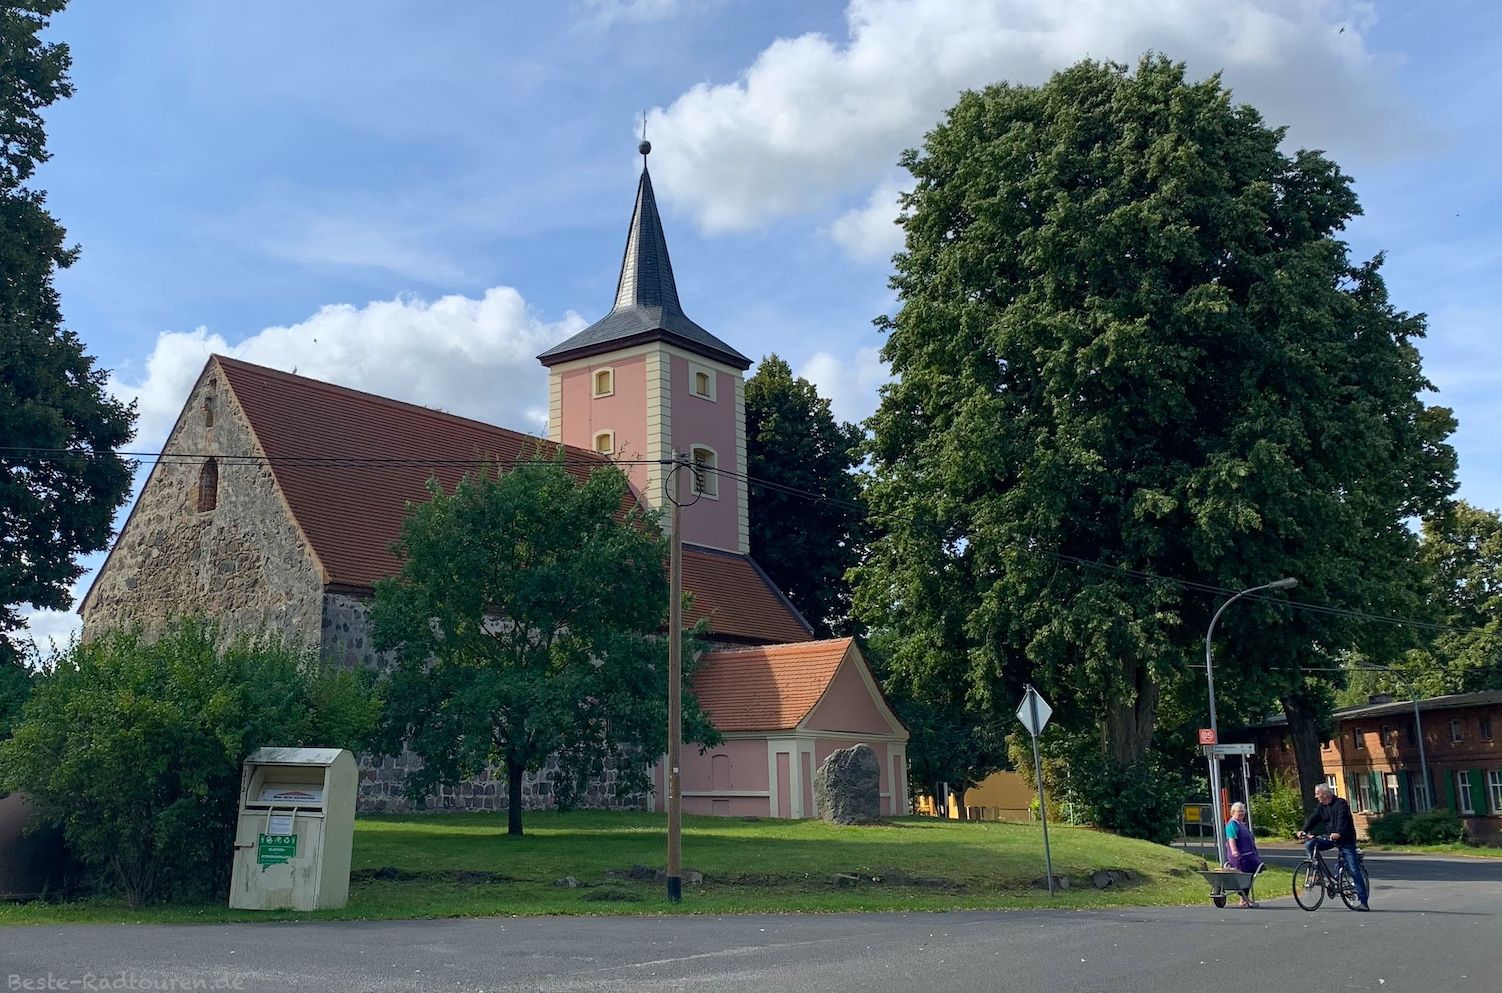 Foto vom Stille-Pauline-Radweg aus: Kirche in der Dorfmitte von Buskow bei Neuruppin